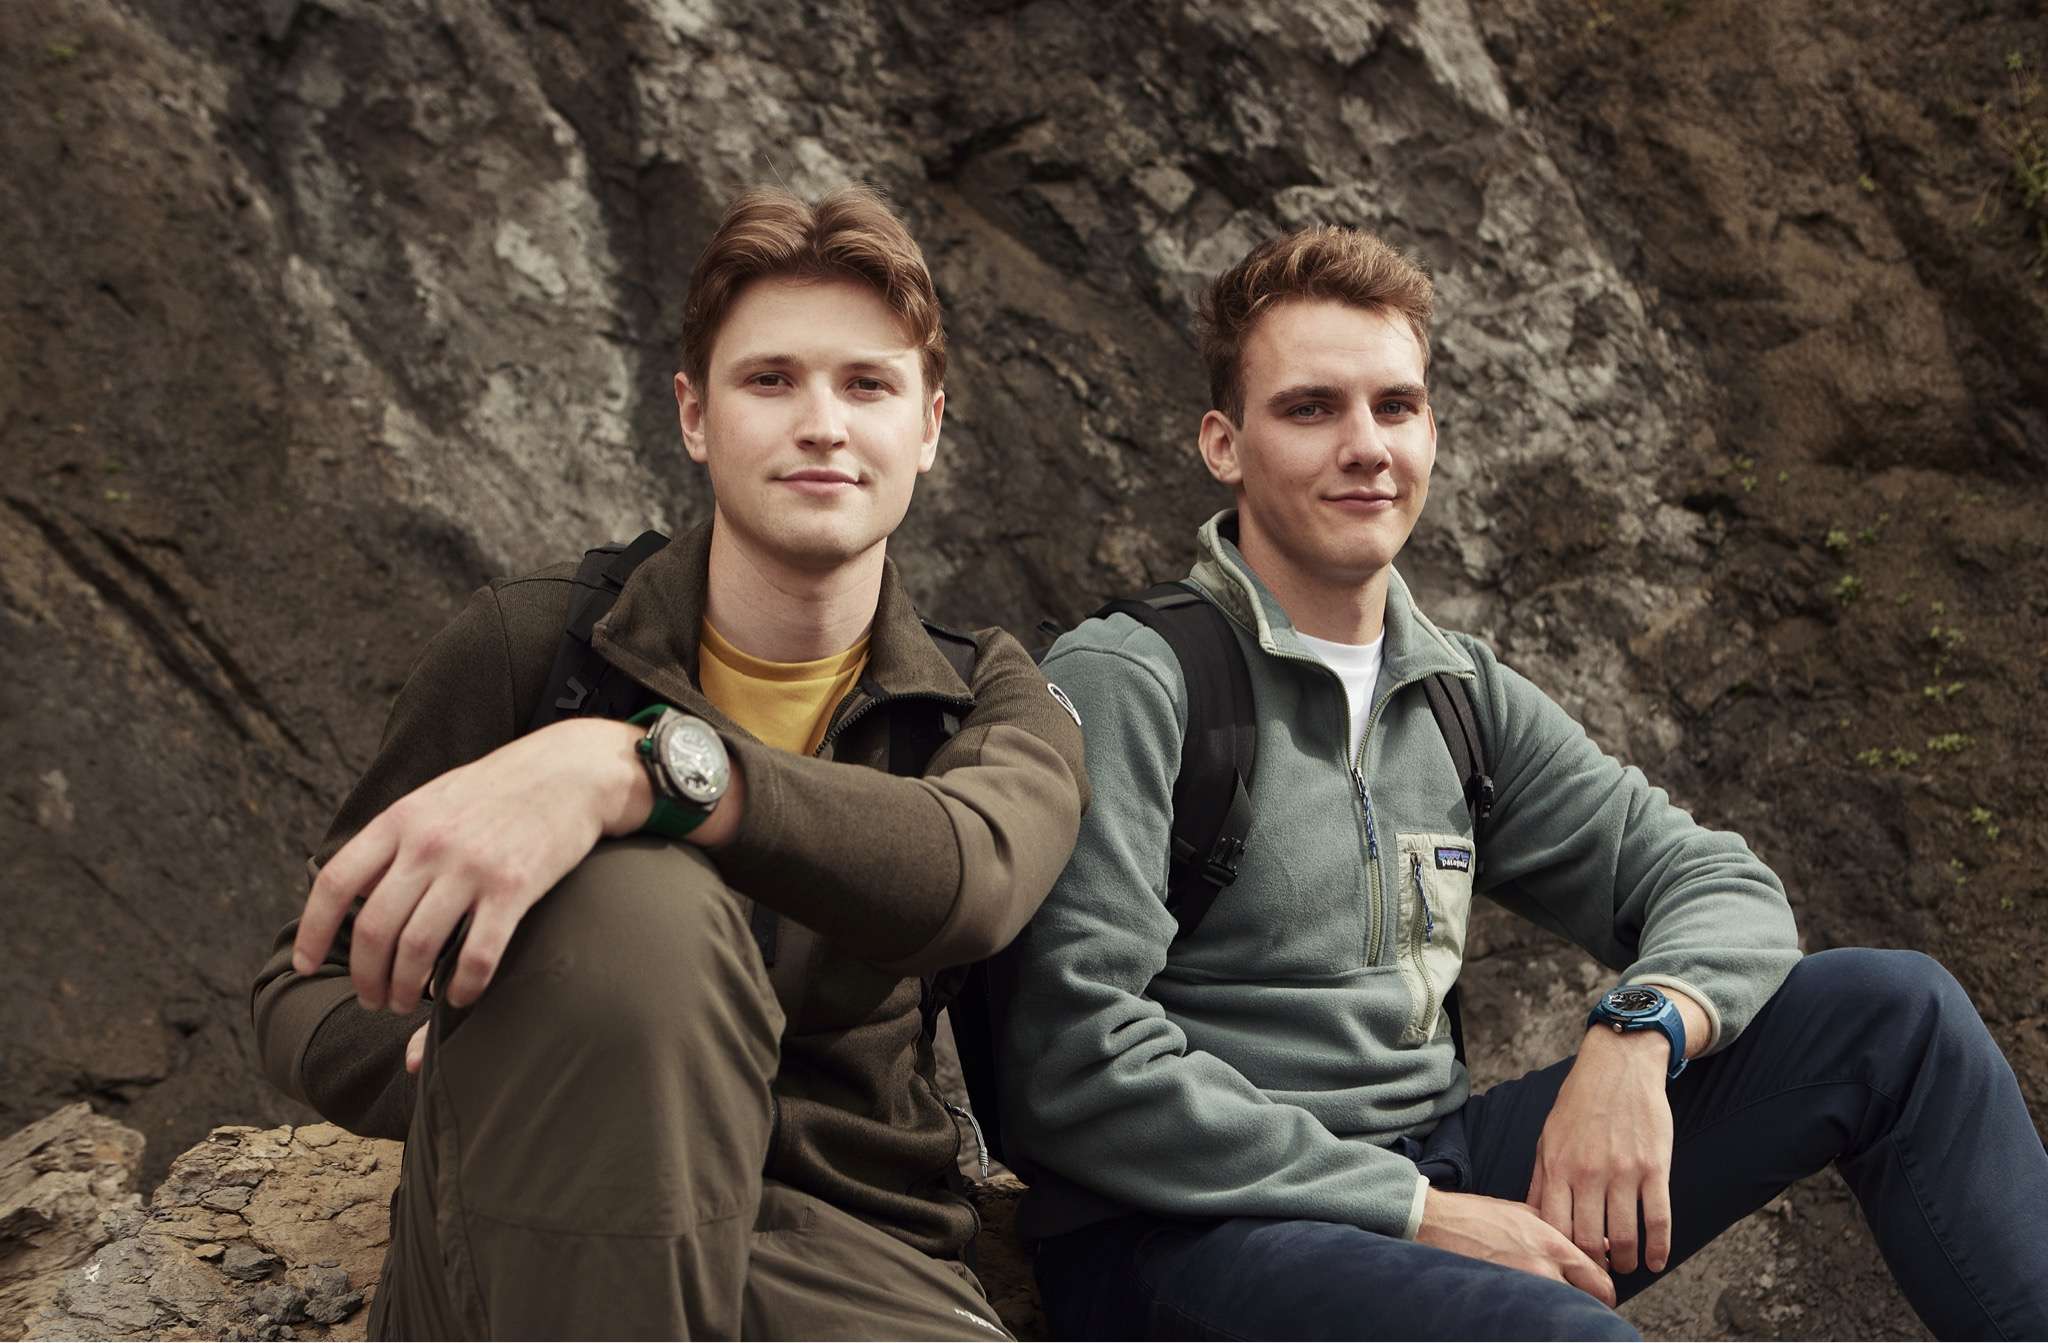 Jong Belgisch ondernemersduo lanceert exclusief horlogemerk ‘Parterra’ op crowdfunding platform.